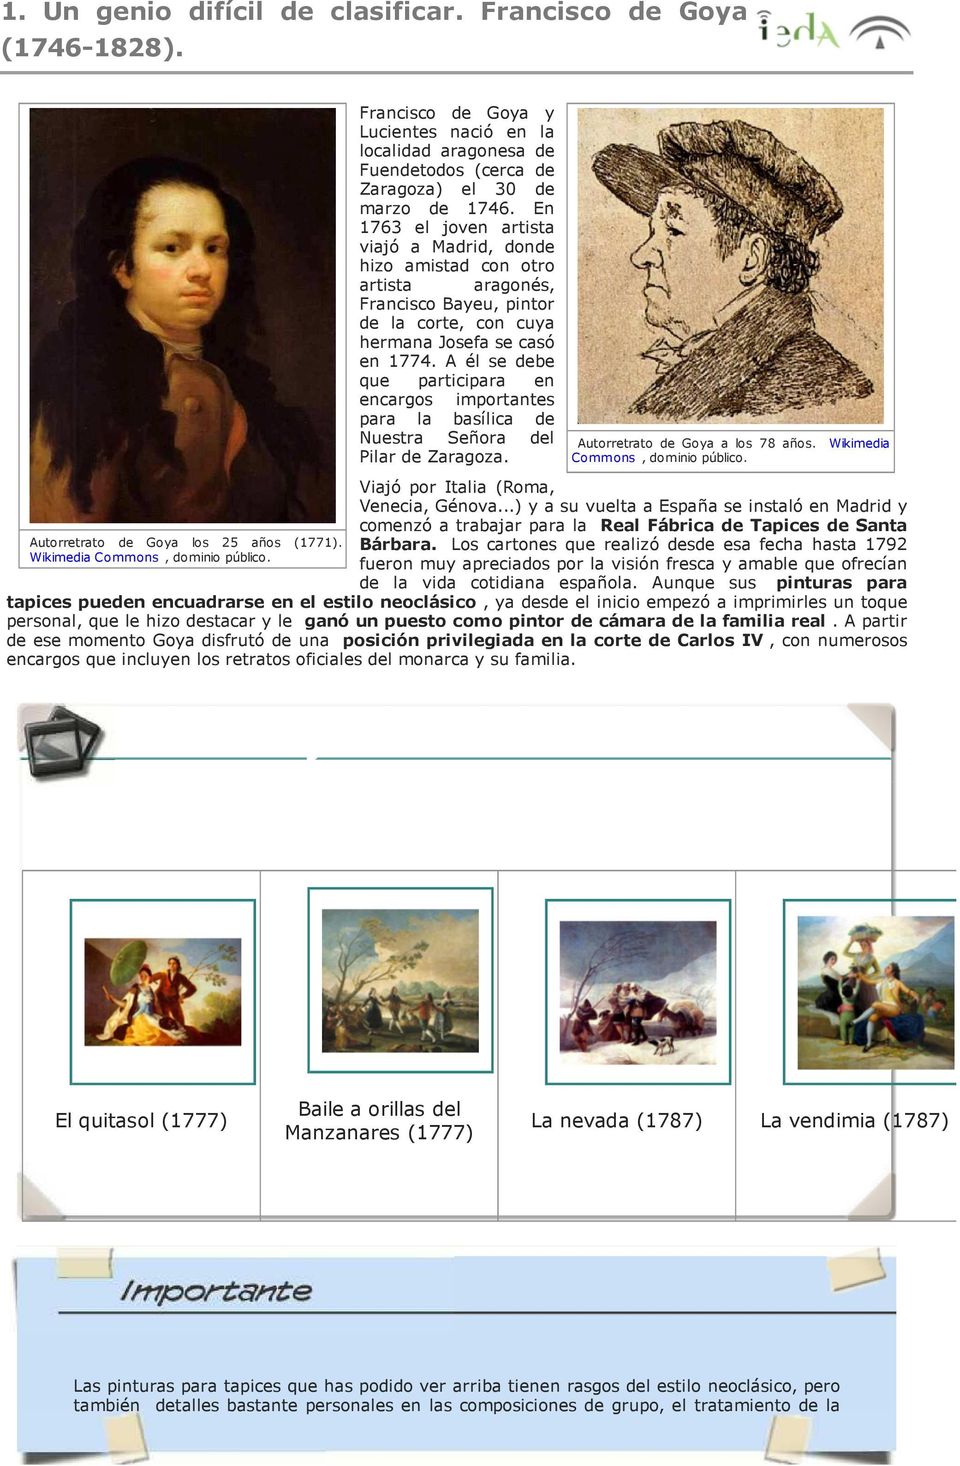 A él se debe que participara en encargos importantes para la basílica de Nuestra Señora del Pilar de Zaragoza. Autorretrato de Goya a los 78 años. Wikimedia Commons, dominio público.